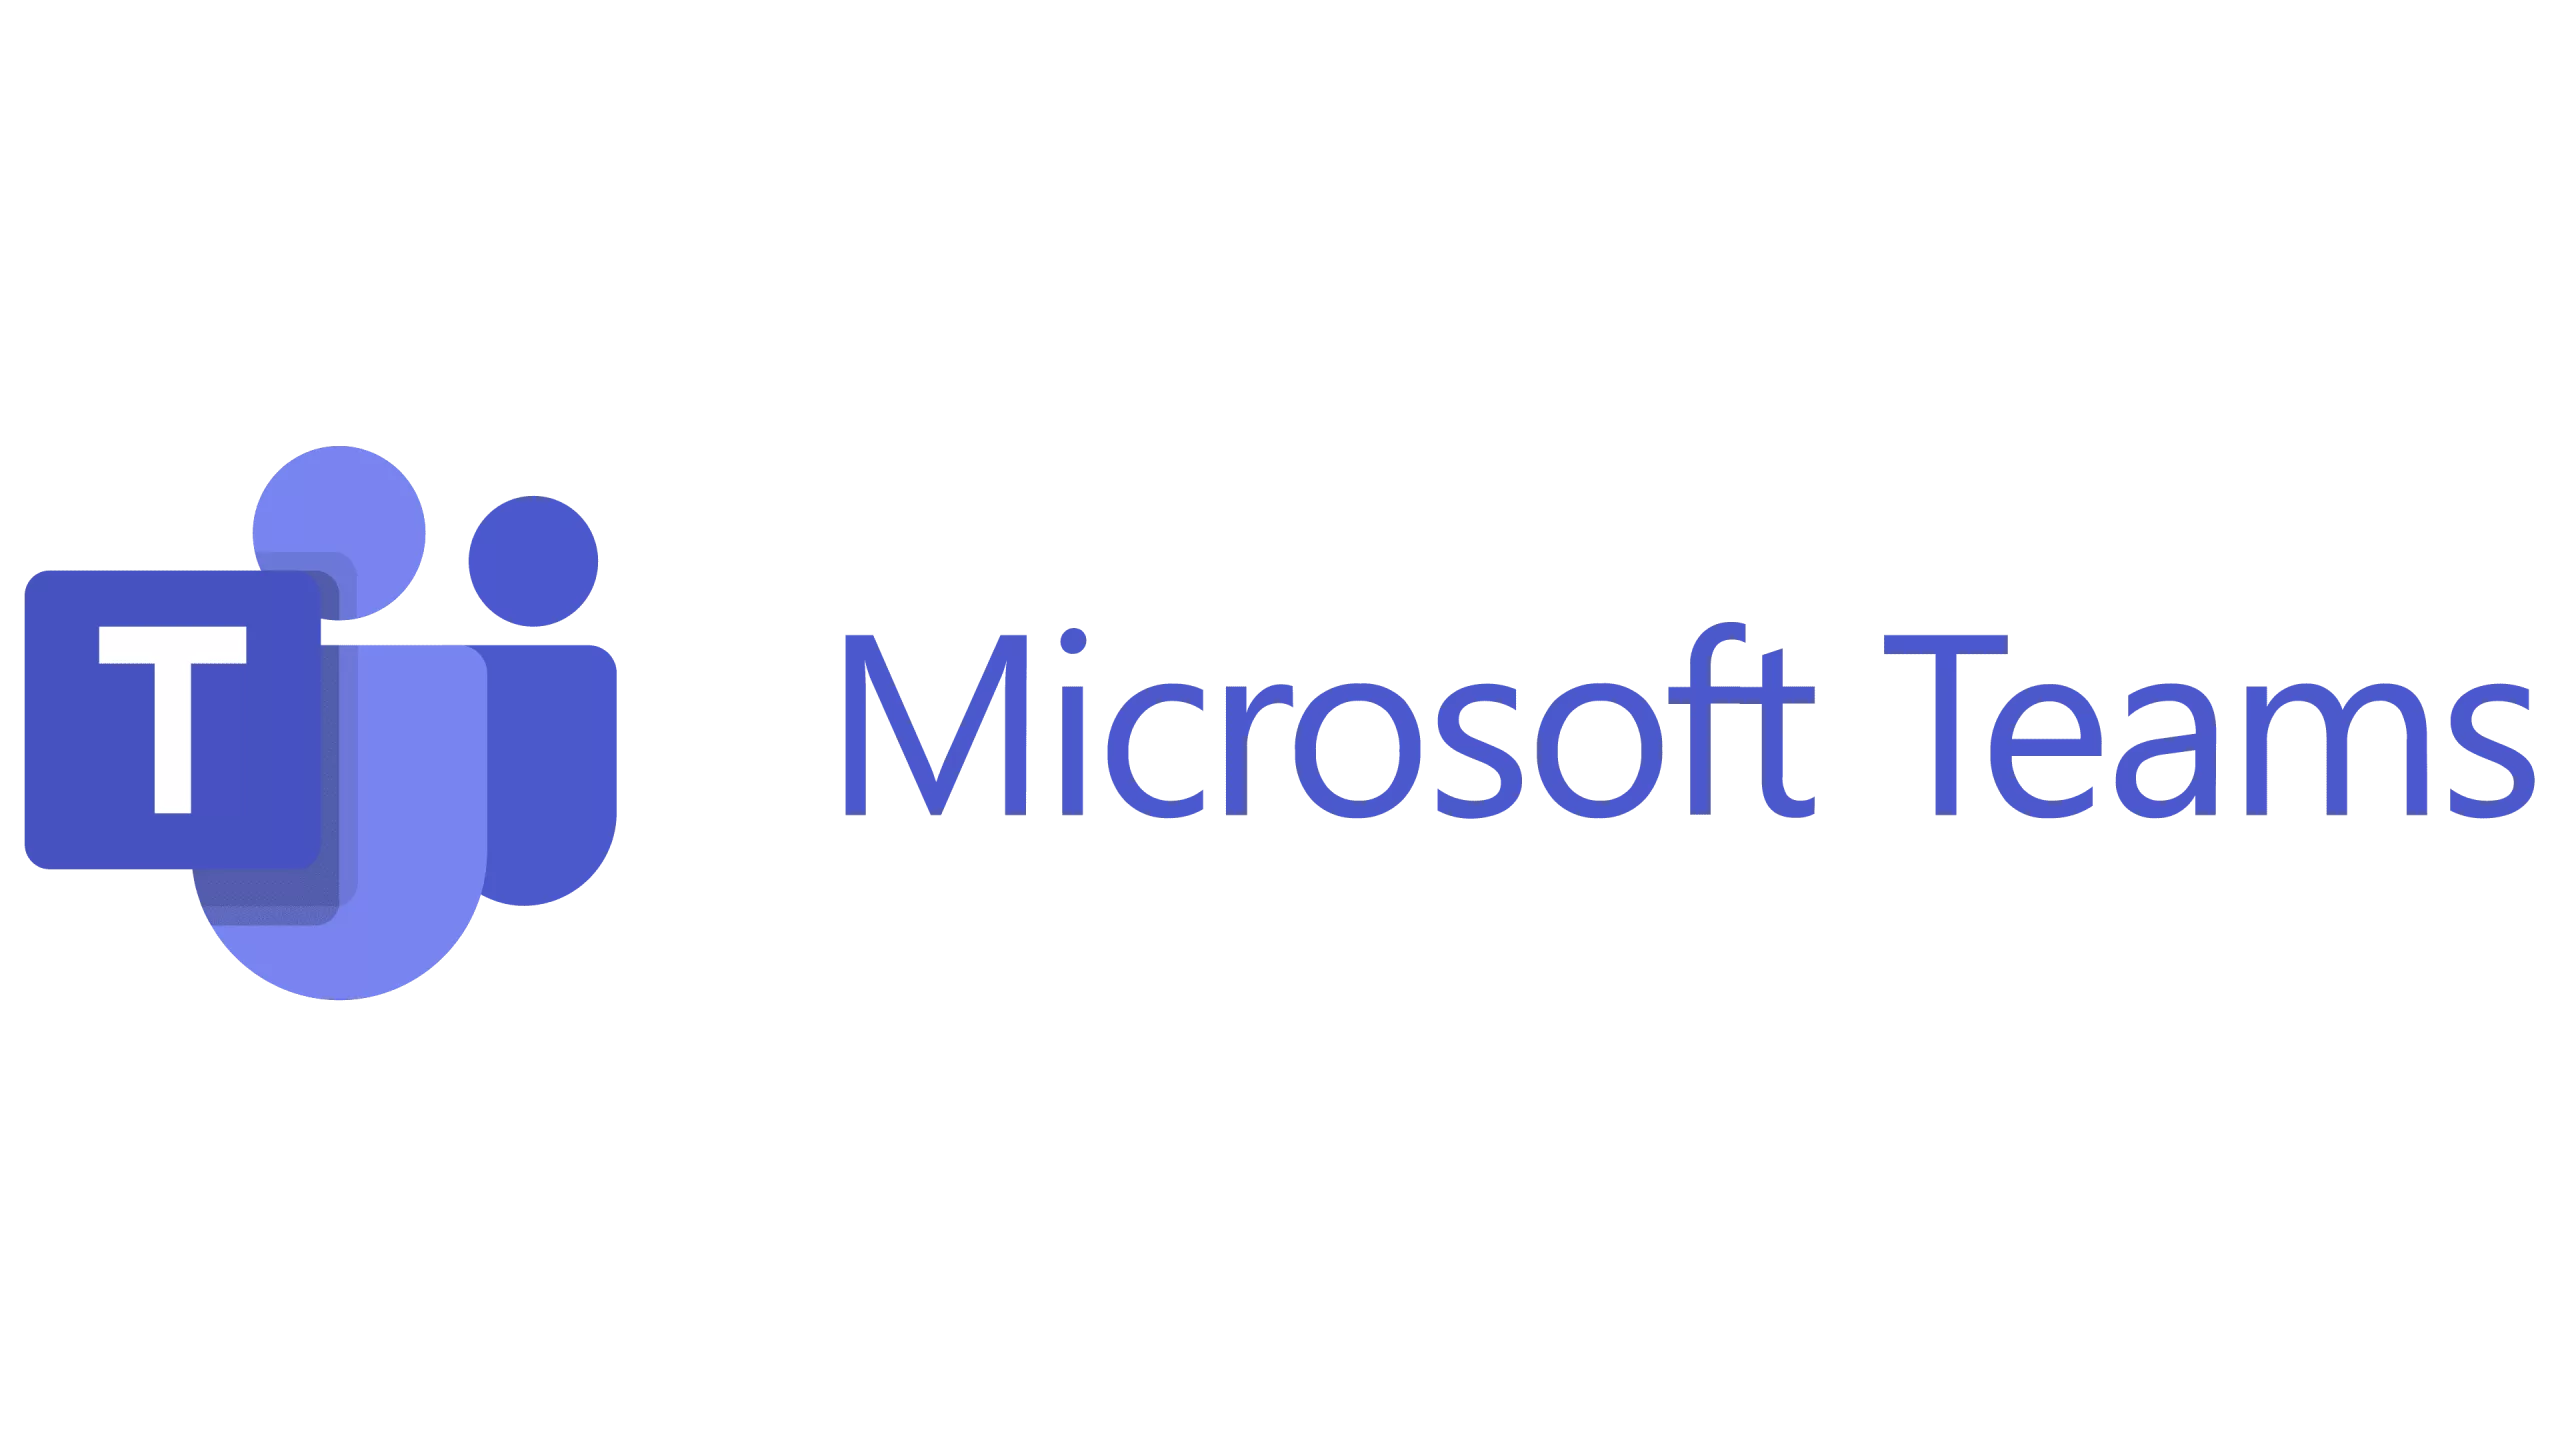 Microsoft-Teams-Emblem